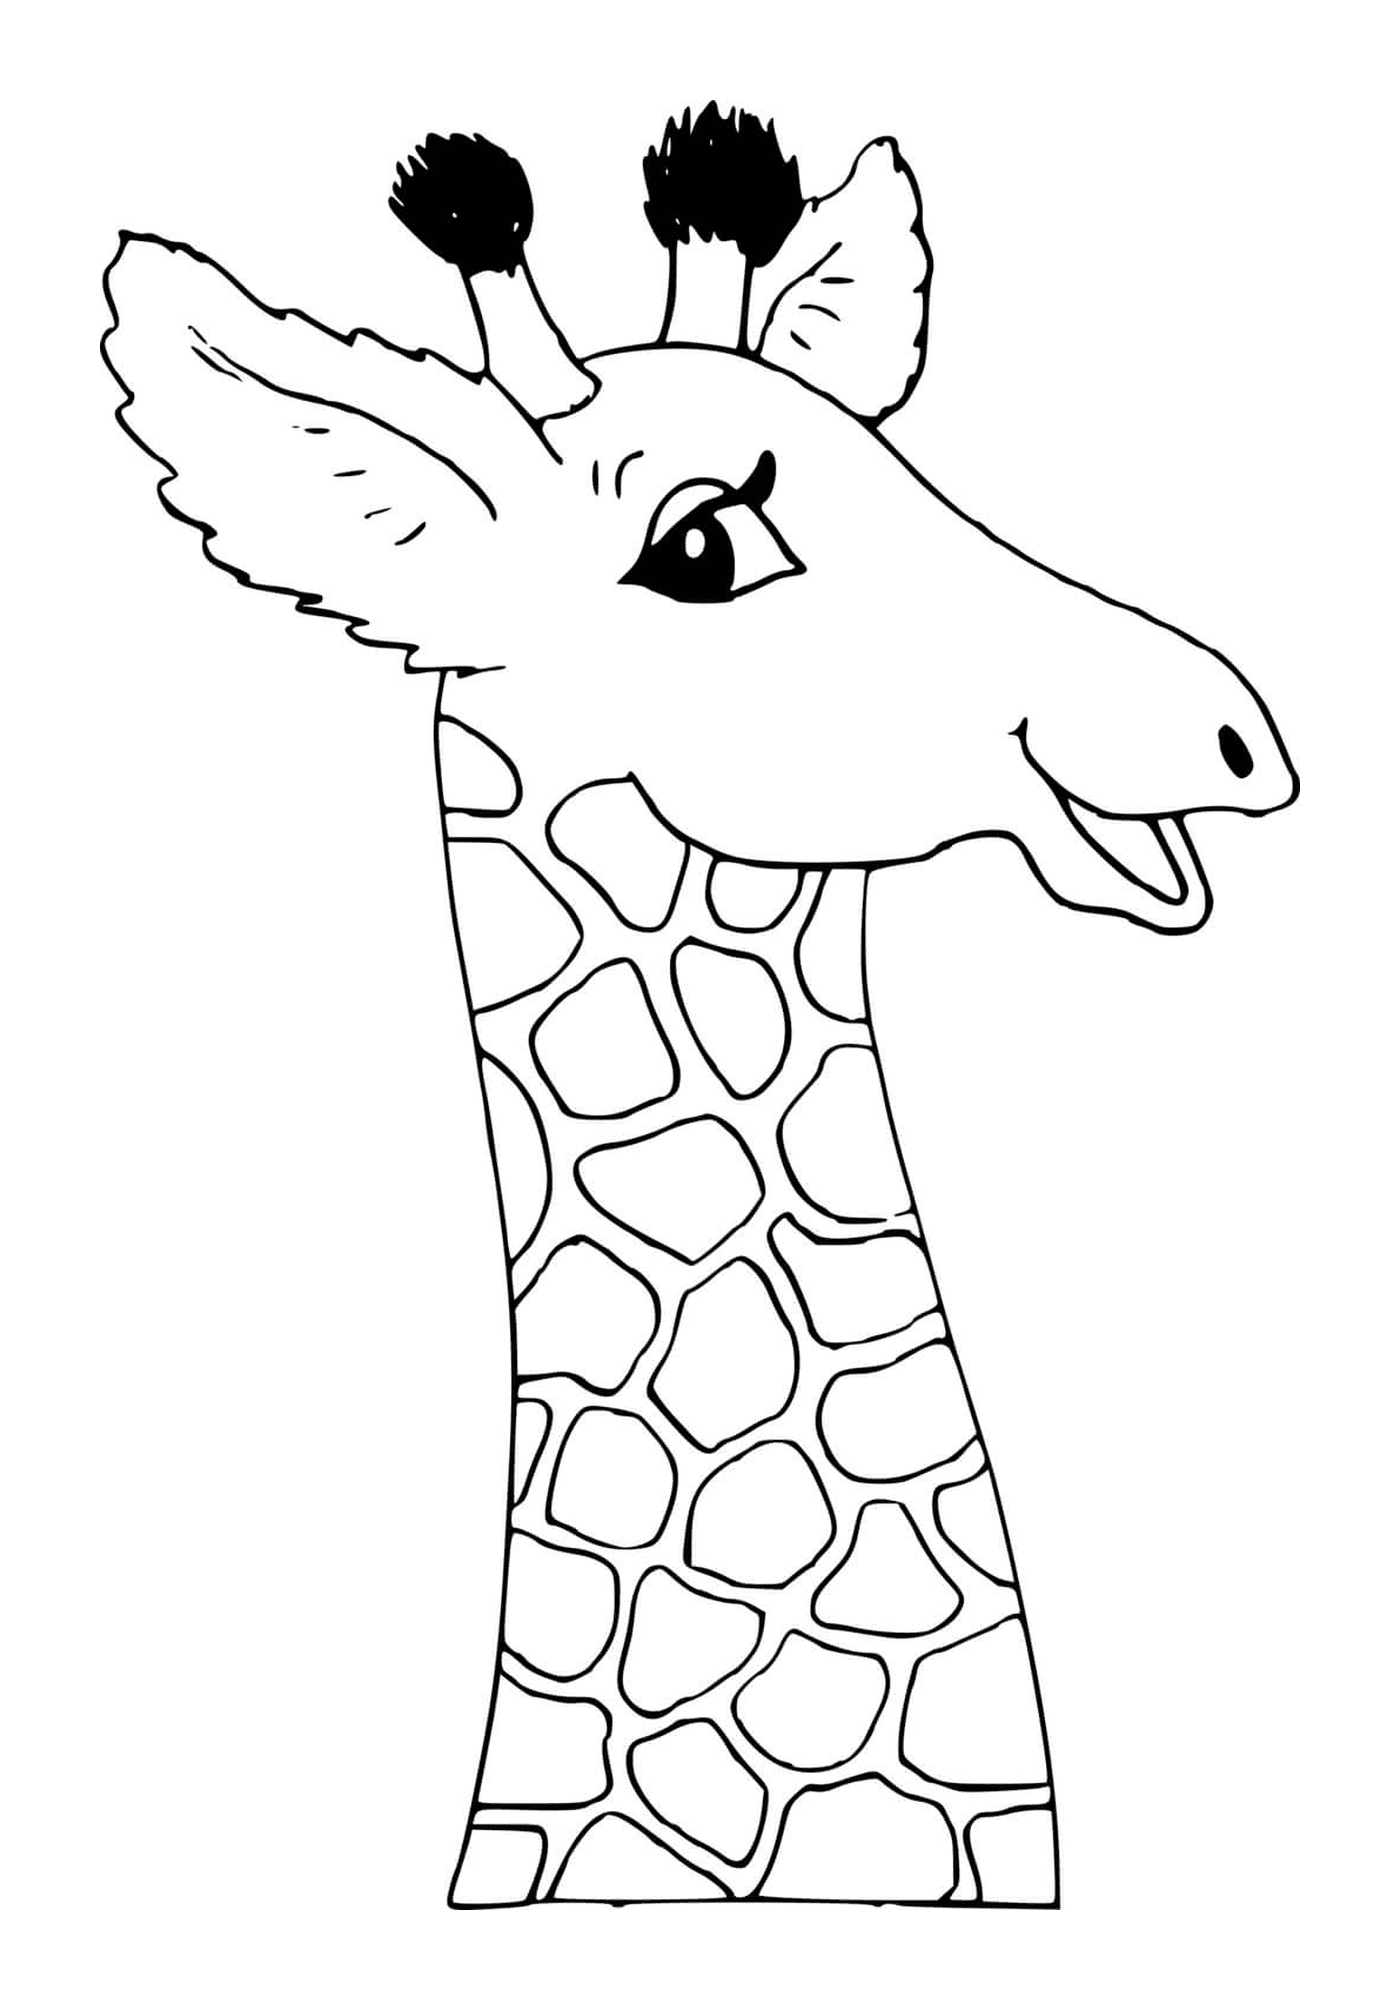  Collo e testa di una giraffa 